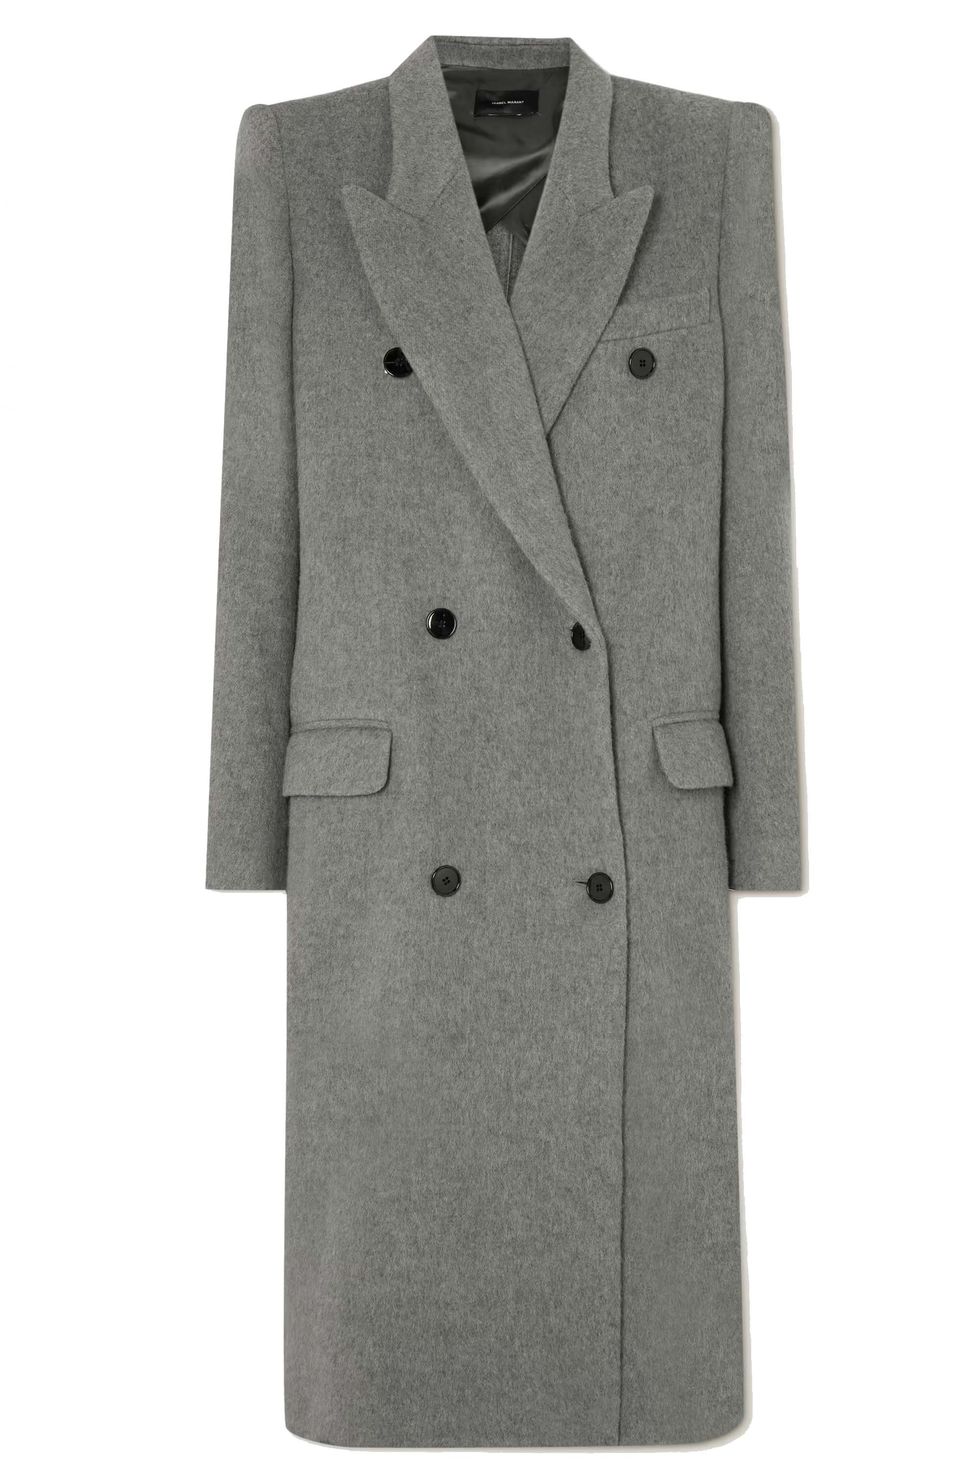 isabel marant grey coat